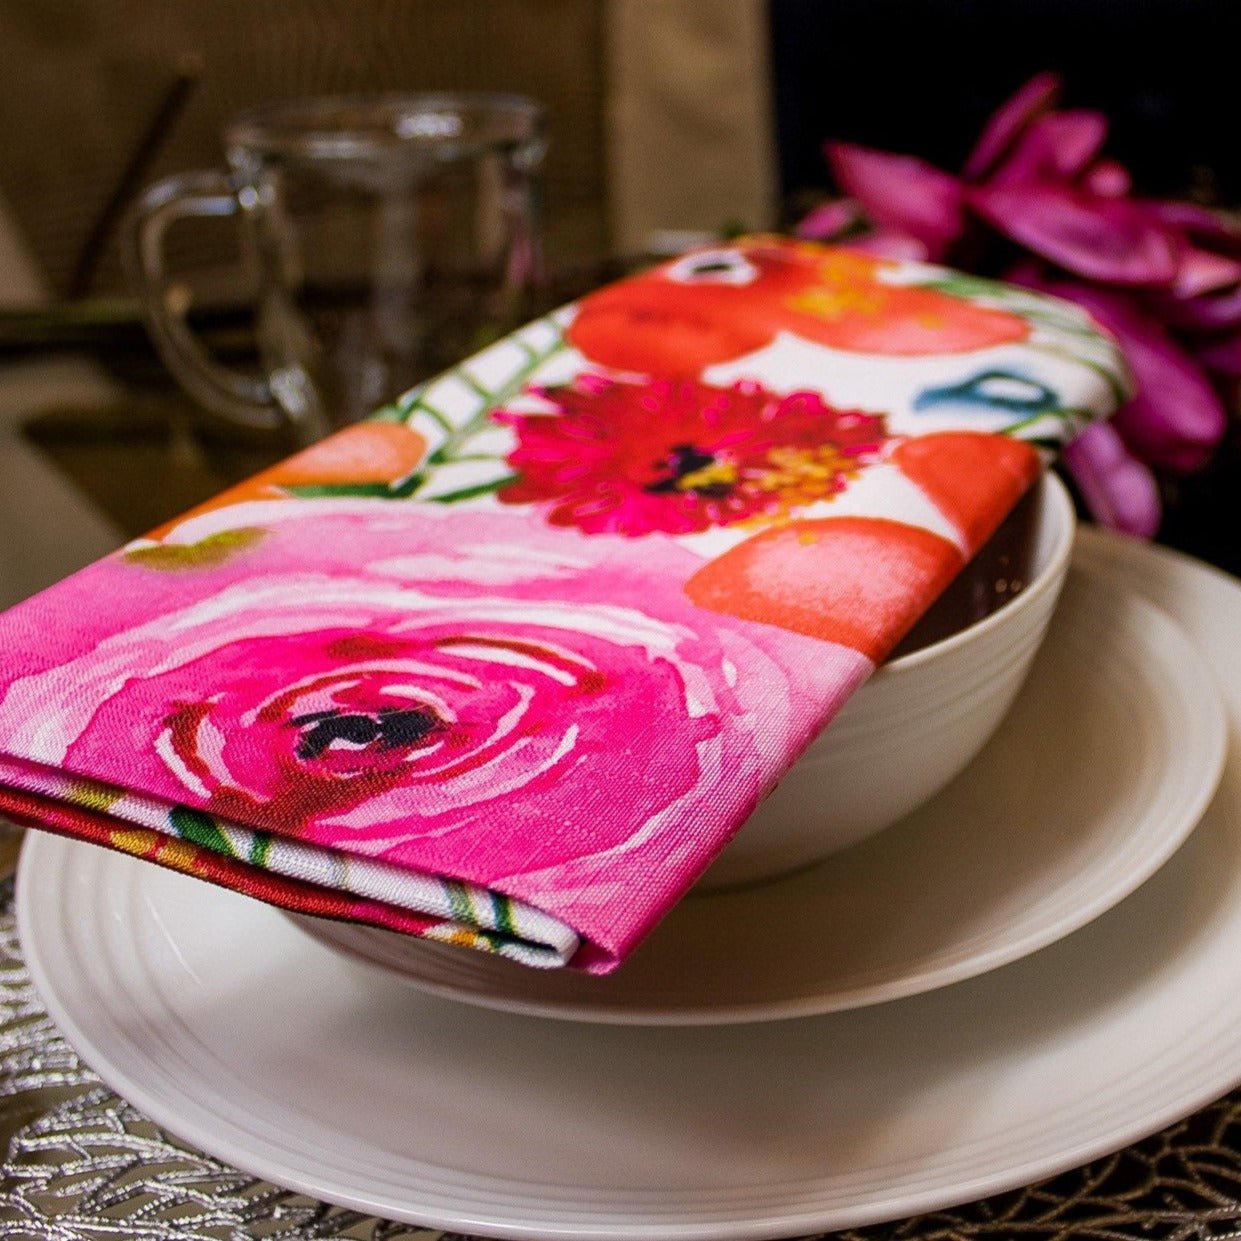  4) | Formal Dinner Table Decor | Cloth Table Linen | Summer Table | New Home Gift | Glam Home Decor - DiamondValeDecor